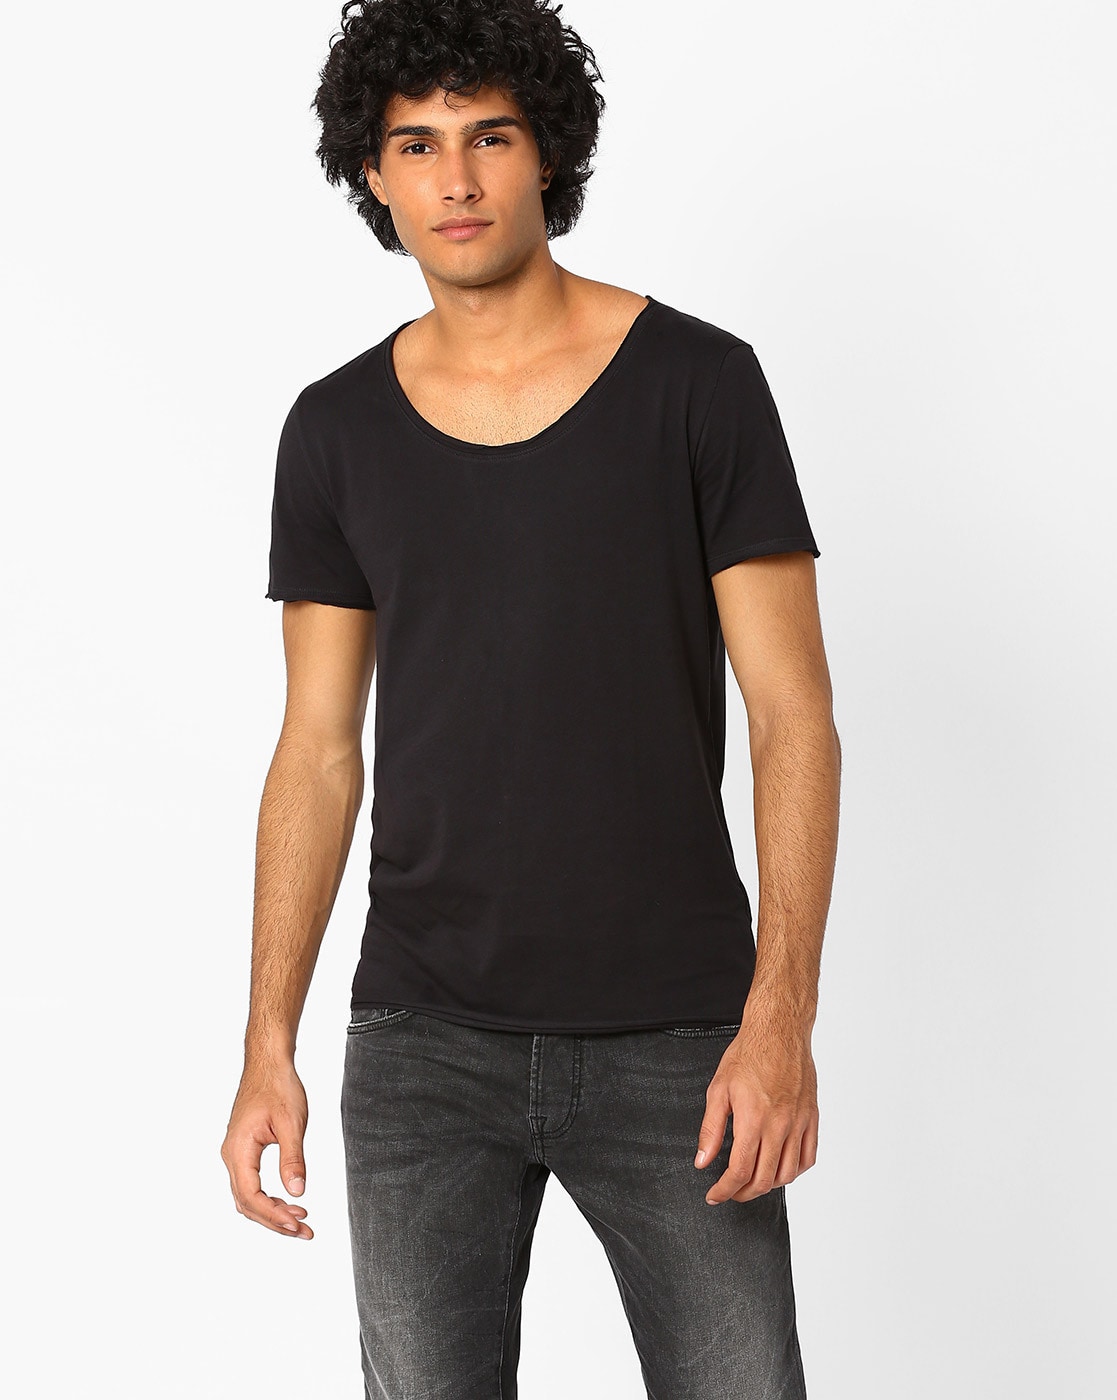 Buy Black Tshirts for Men by Blue Saint Online | Ajio.com